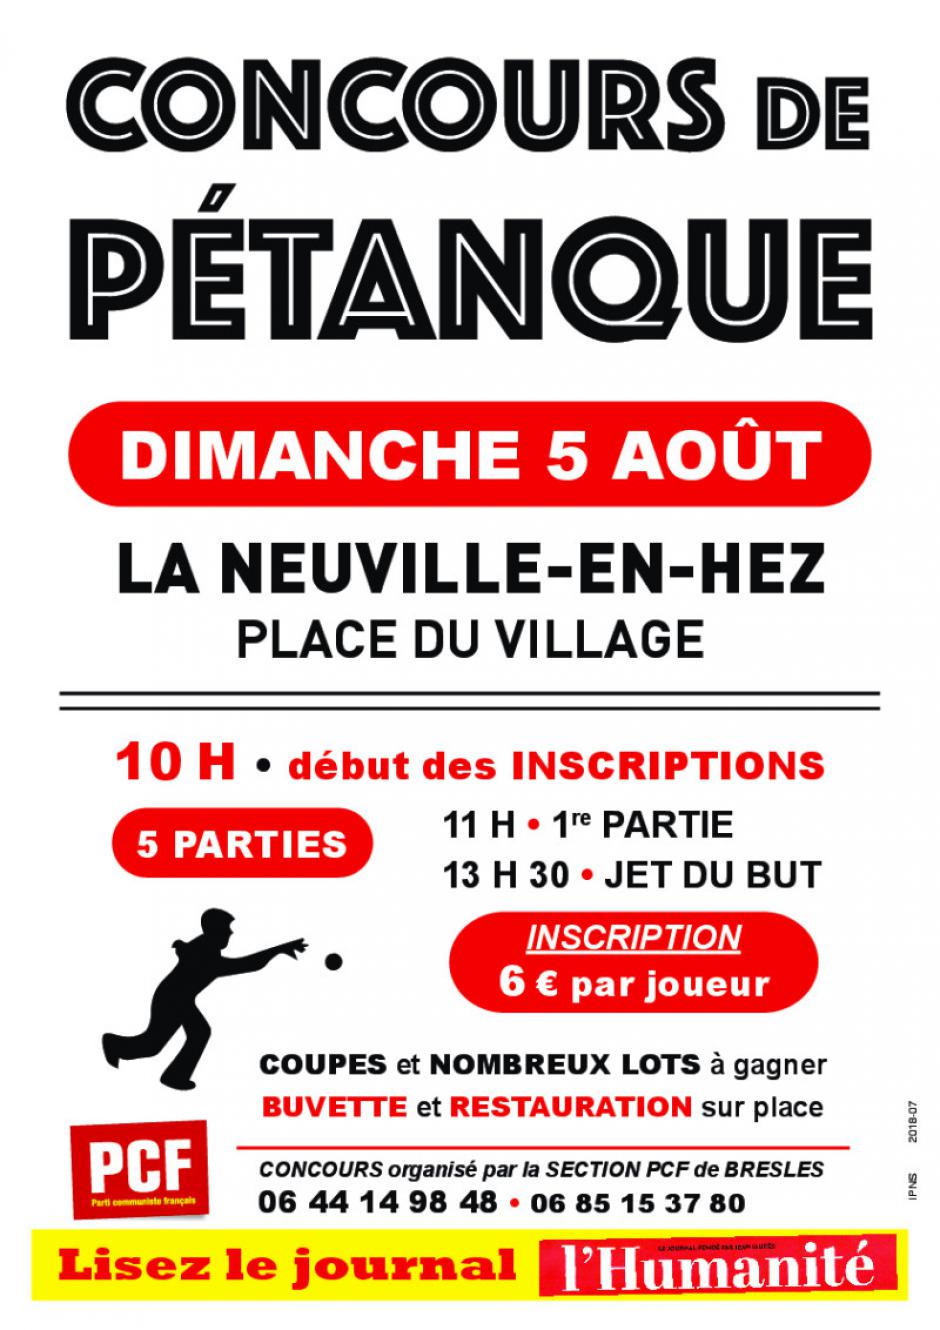 5 août, La Neuville-en-Hez - Concours de pétanque de la section PCF de Bresles